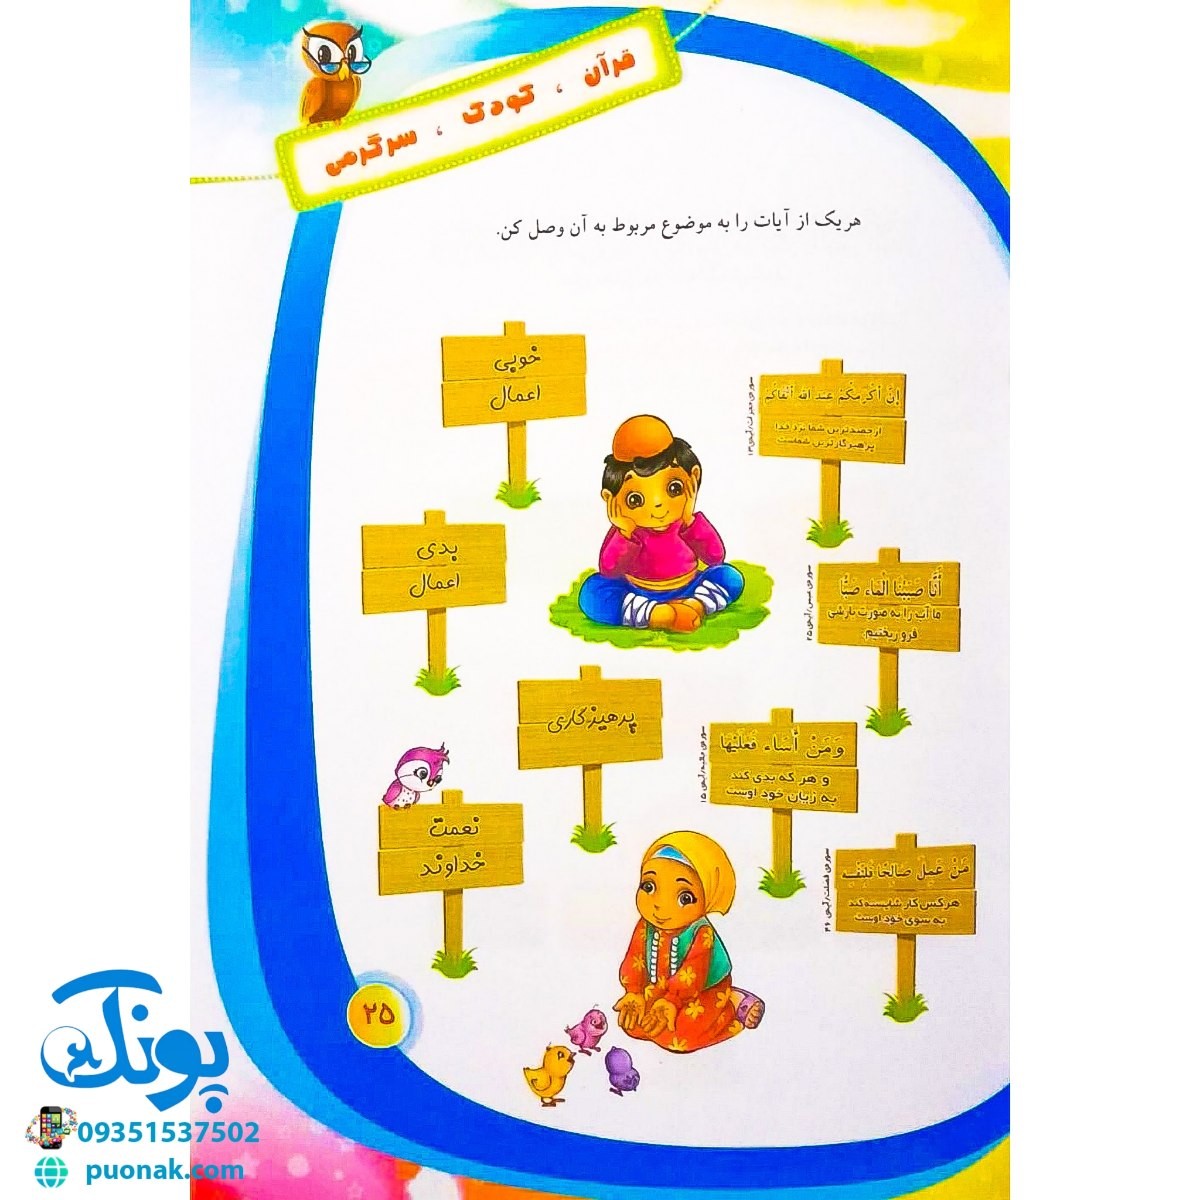 کتاب قرآن، کودک، سرگرمی ۲ (۴۰ سرگرمی ۴۰ نکته قرآنی، آشنایی با معارف قرآنی به شیوه ی سرگرمی) - محصولات آموزشی پونک